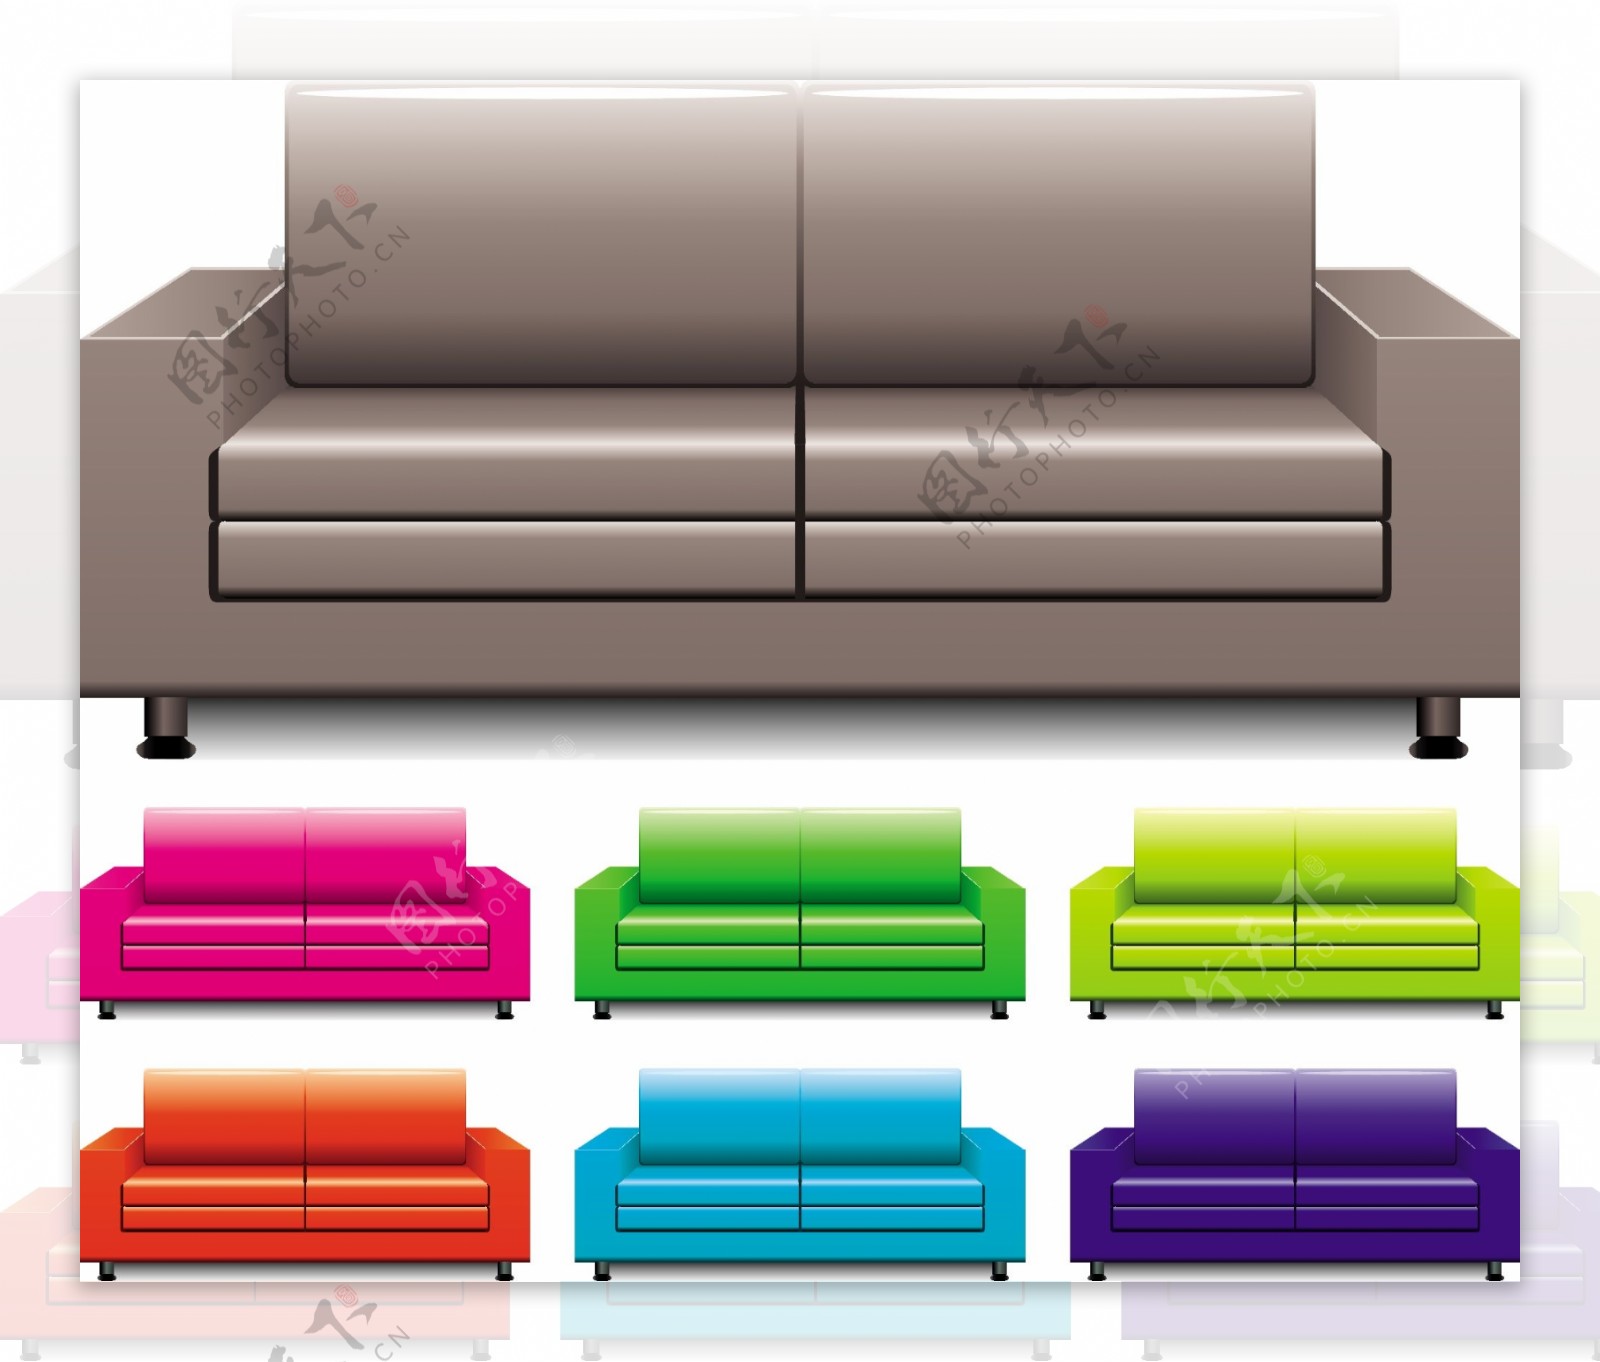 彩色时尚沙发矢量素材